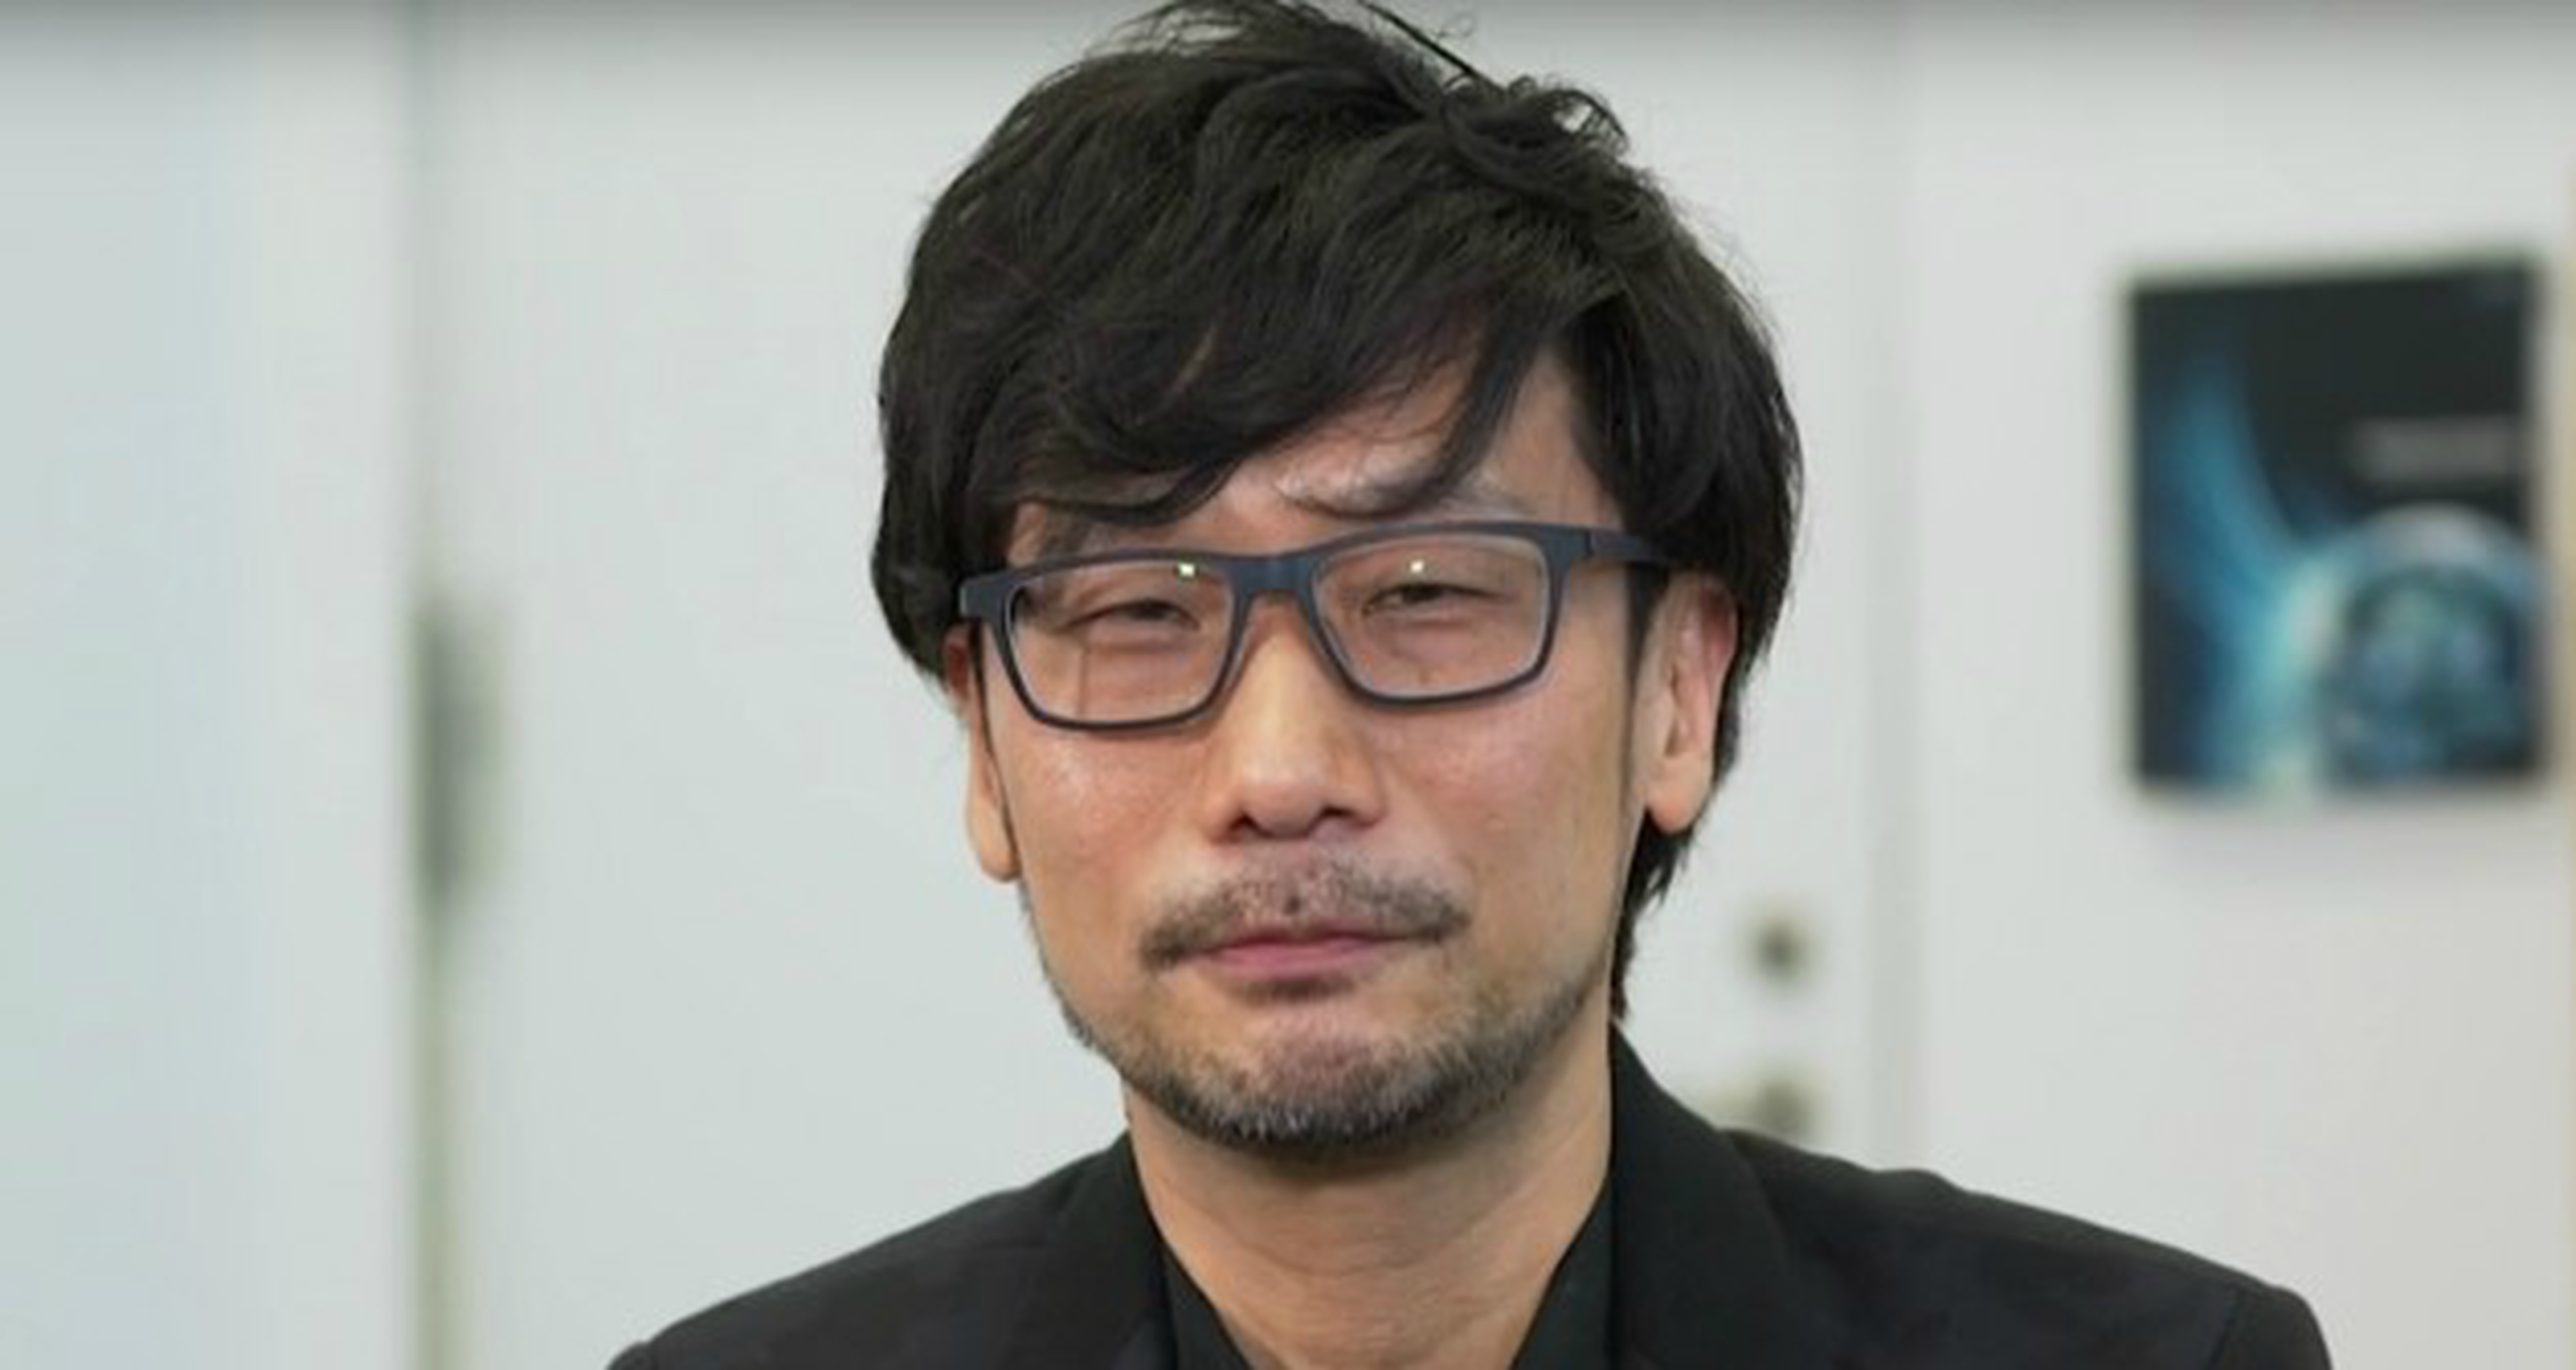 El nuevo juego de Kojima es el “más ambicioso de su carrera”, según Geoff Keighley